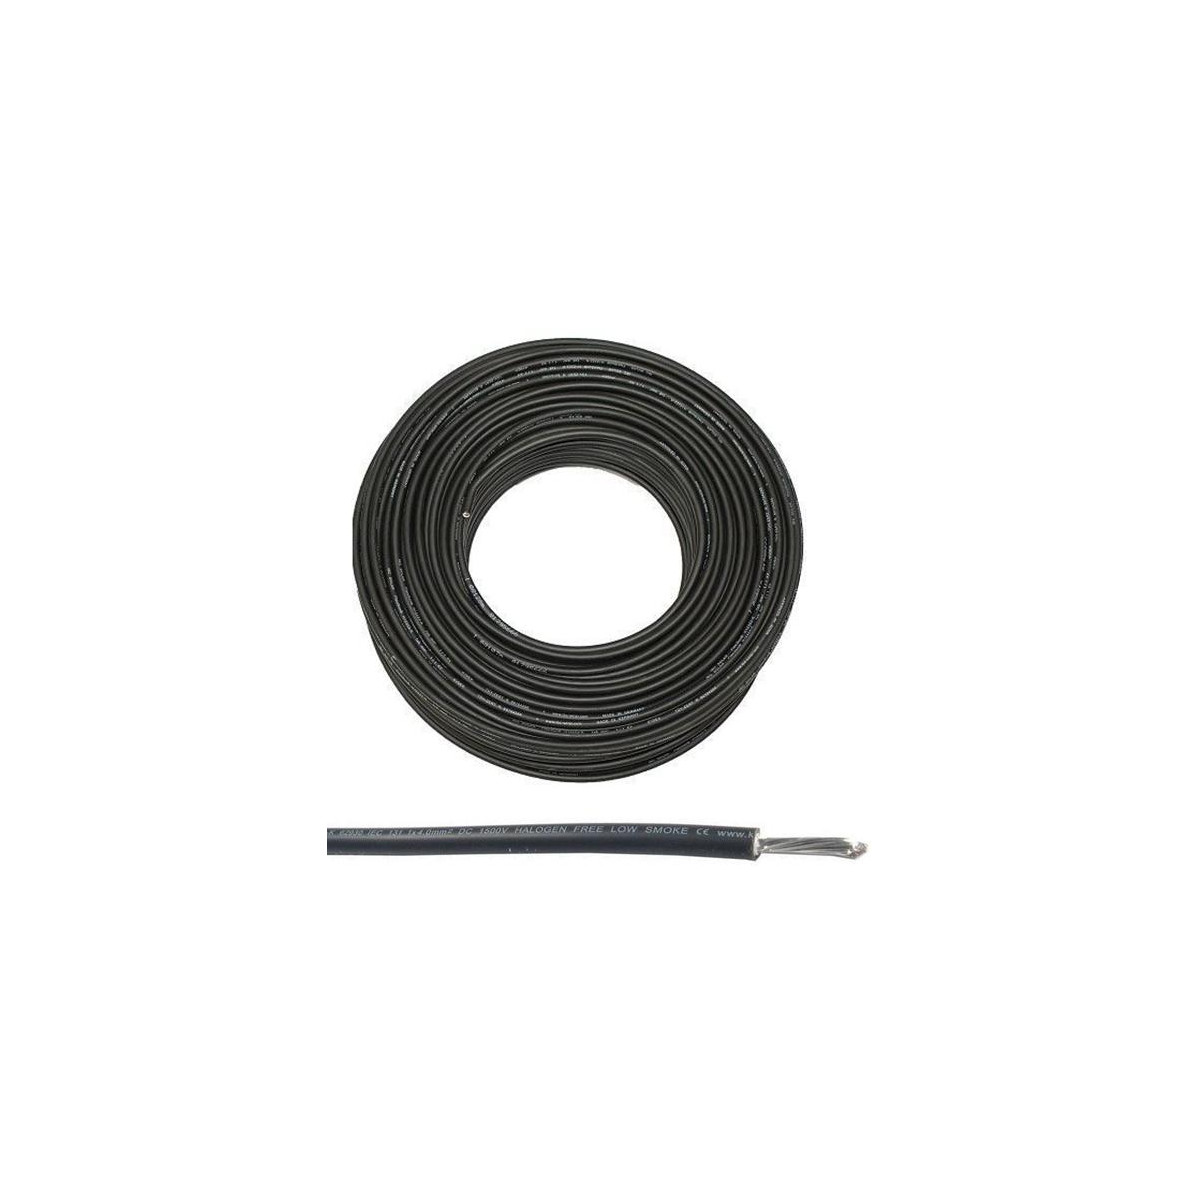 More about Solární kabel 10mm2, 1500V, černý, 100m